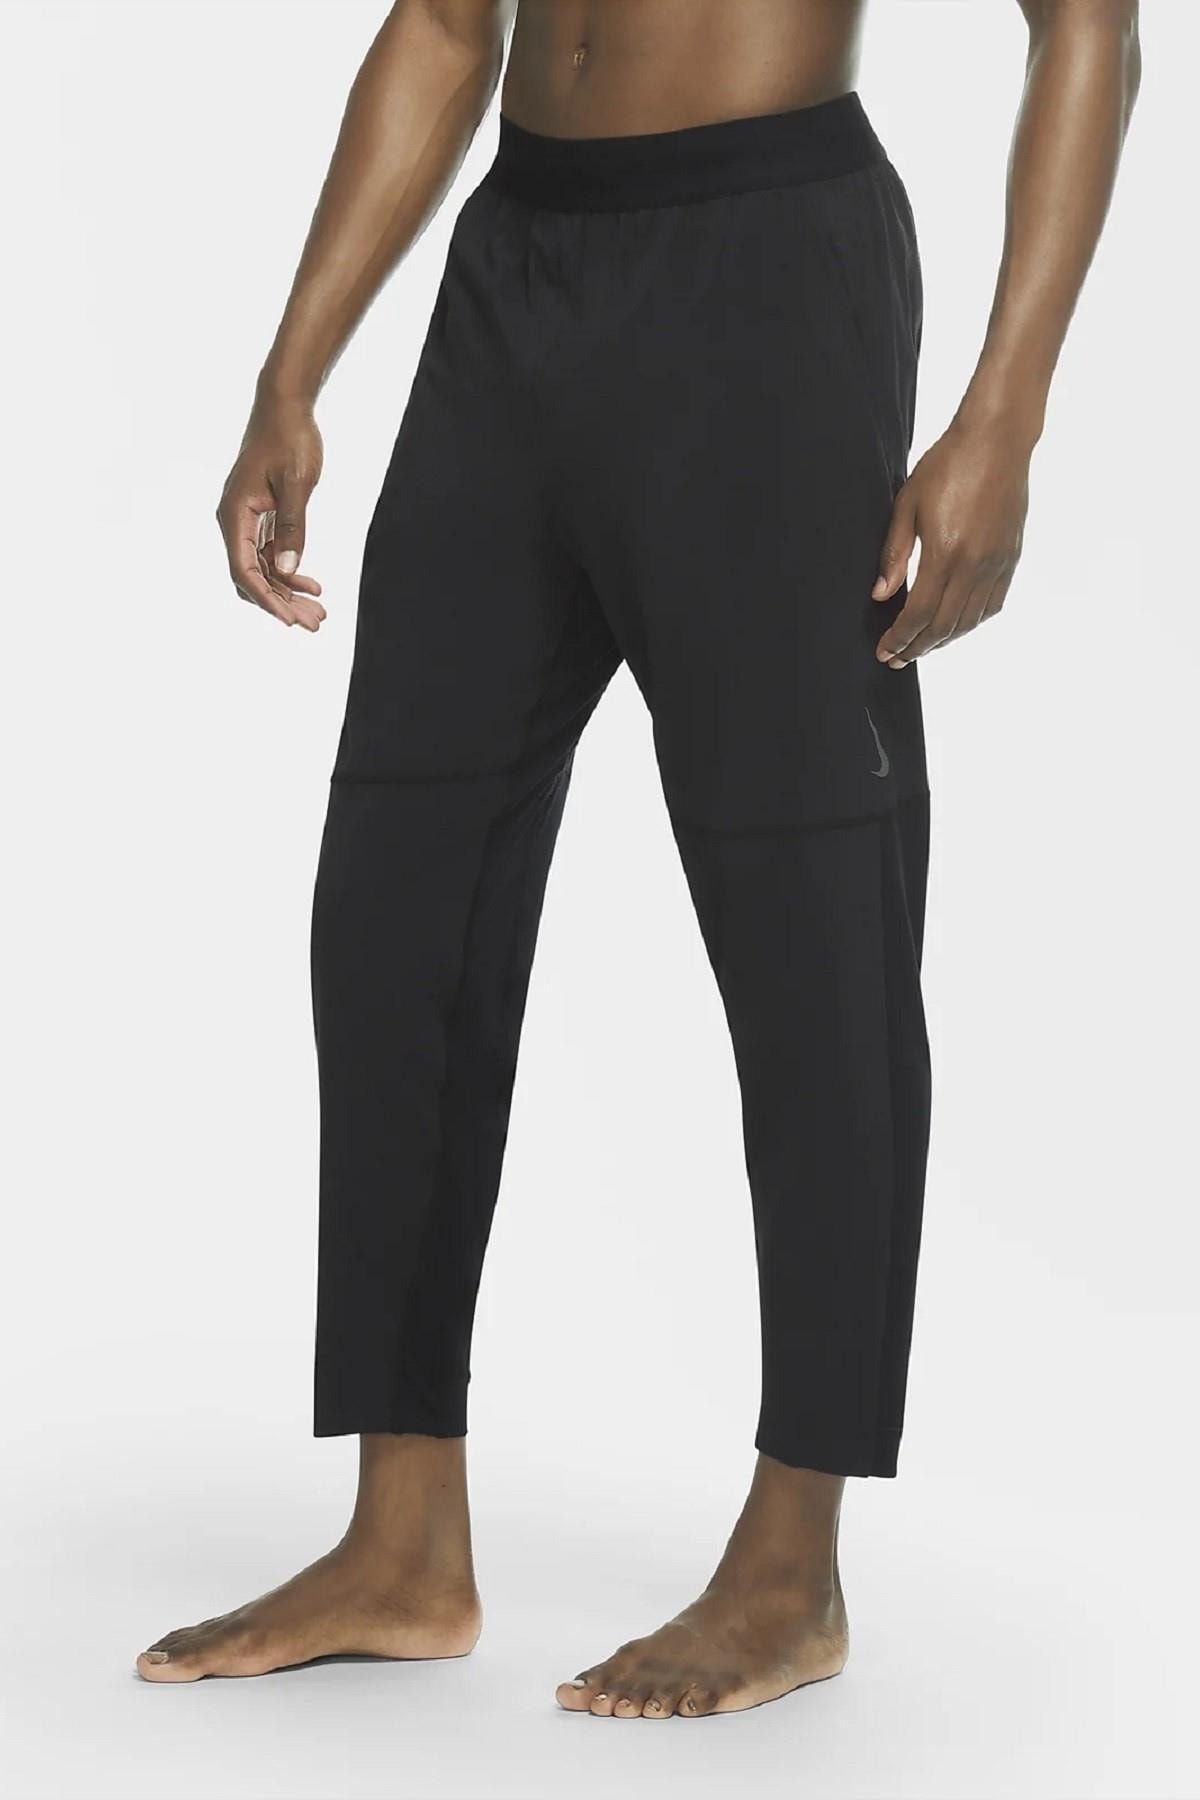 Nike Sportswear Yoga Pants Esnek Yapılı Siyah Eşofman Altı